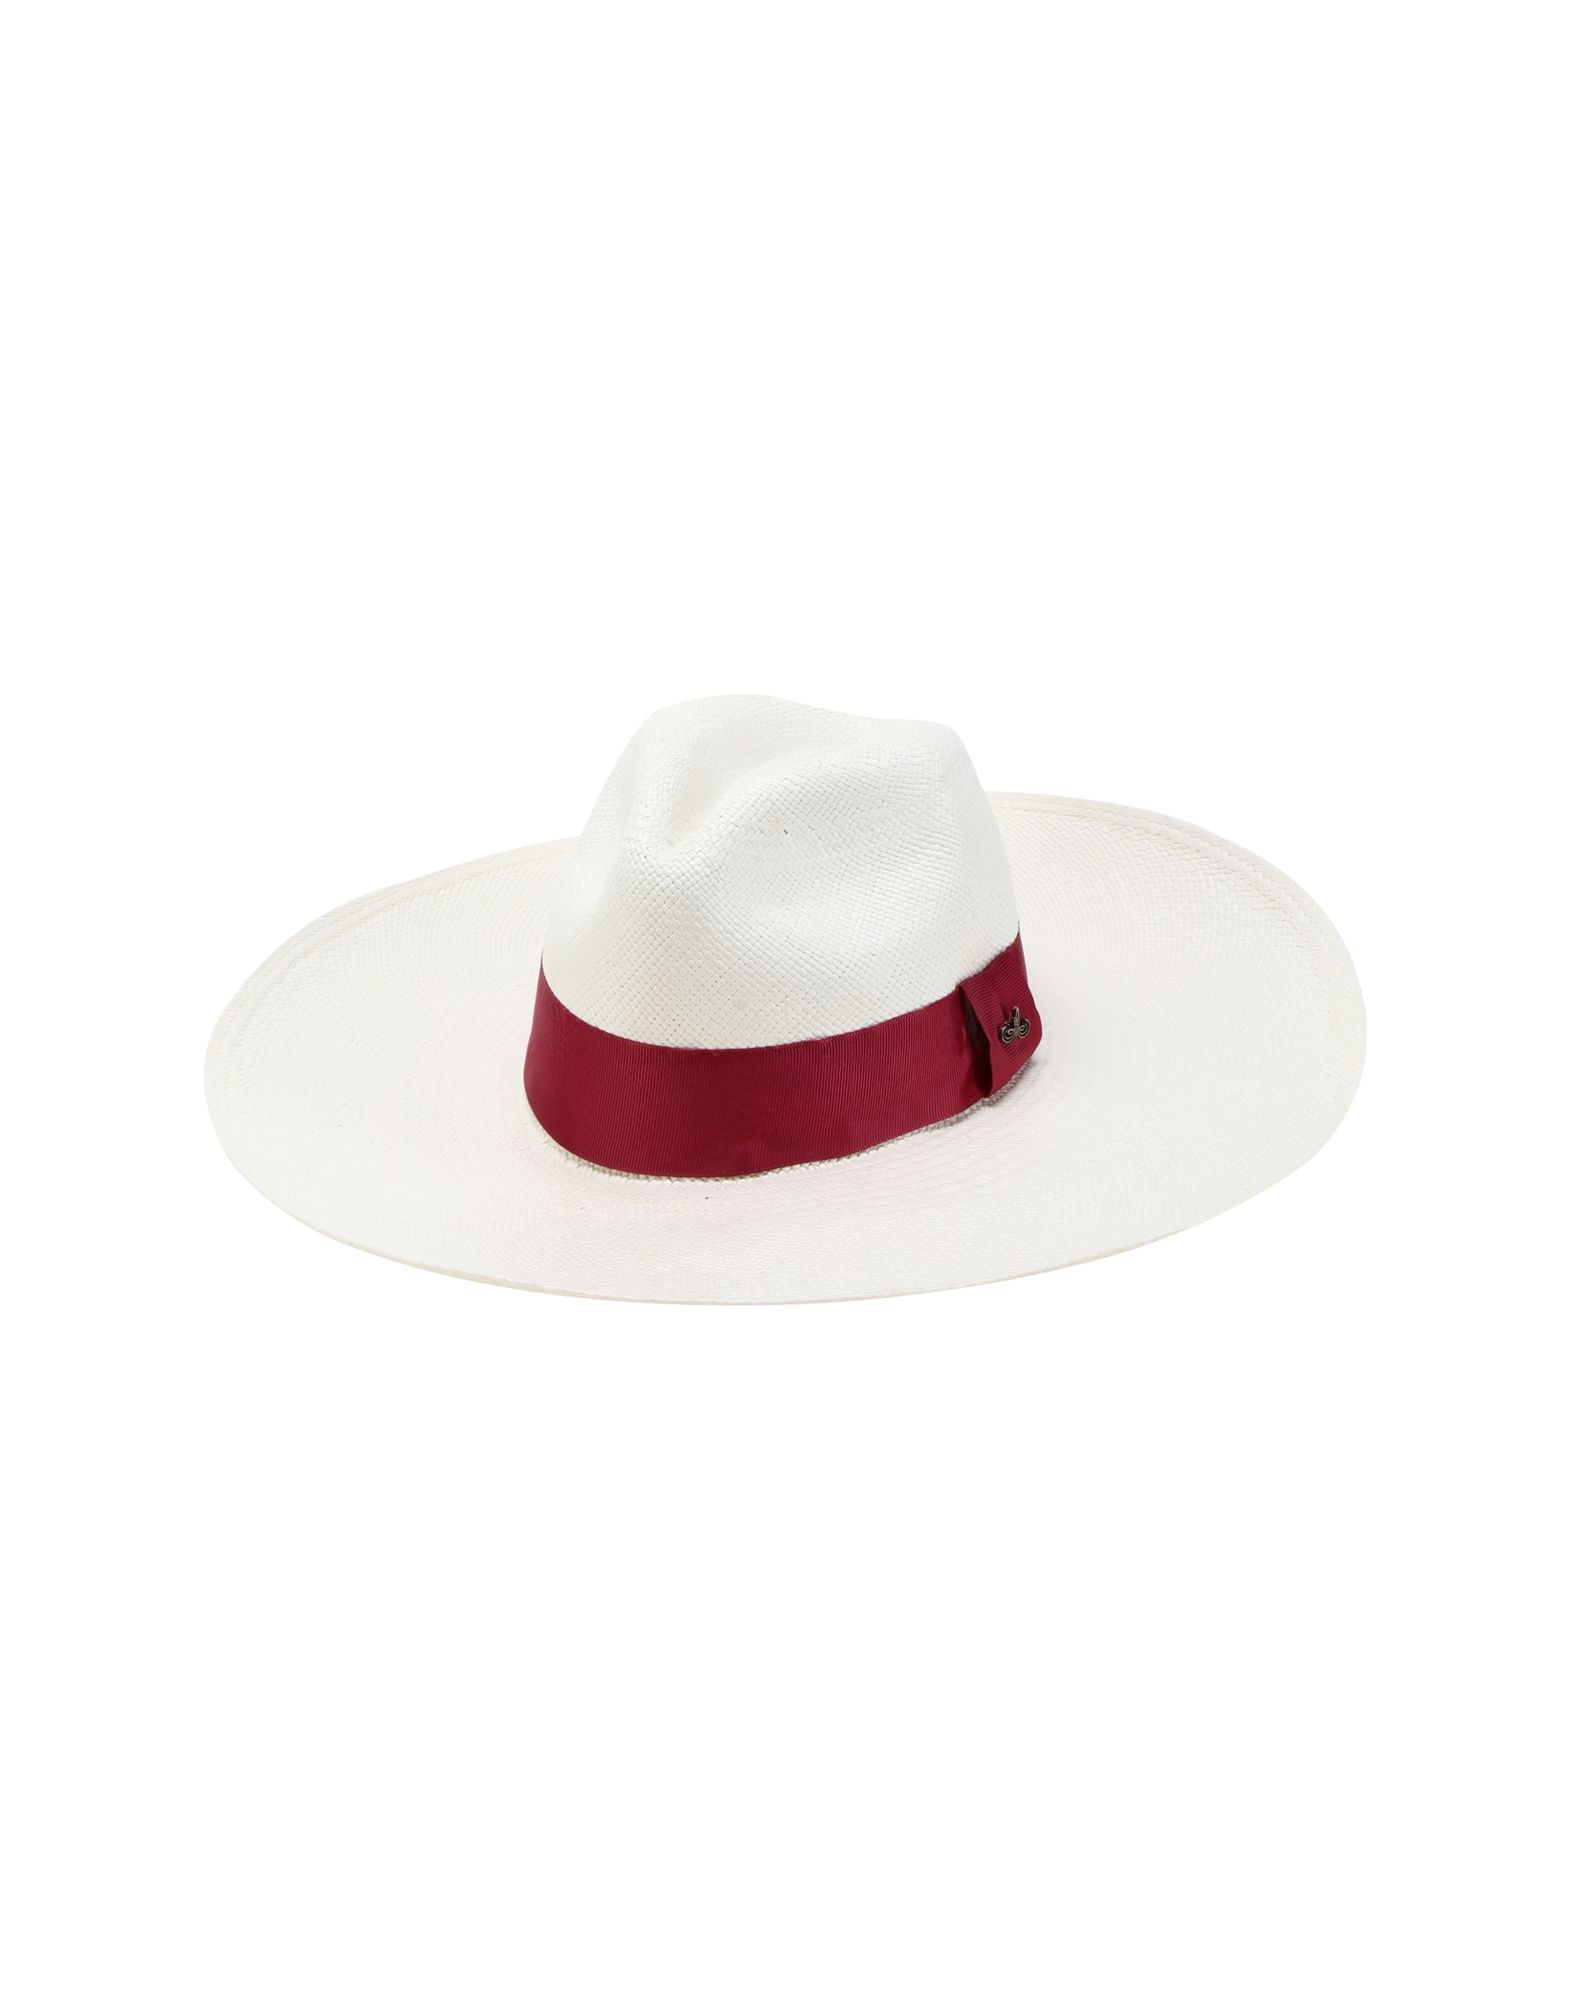 《セール開催中》PANAMA HATTERS レディース 帽子 ホワイト M ストロー 100% EXTRA LARGE BRIM LIPSTICK RED +TRAVEL BAG